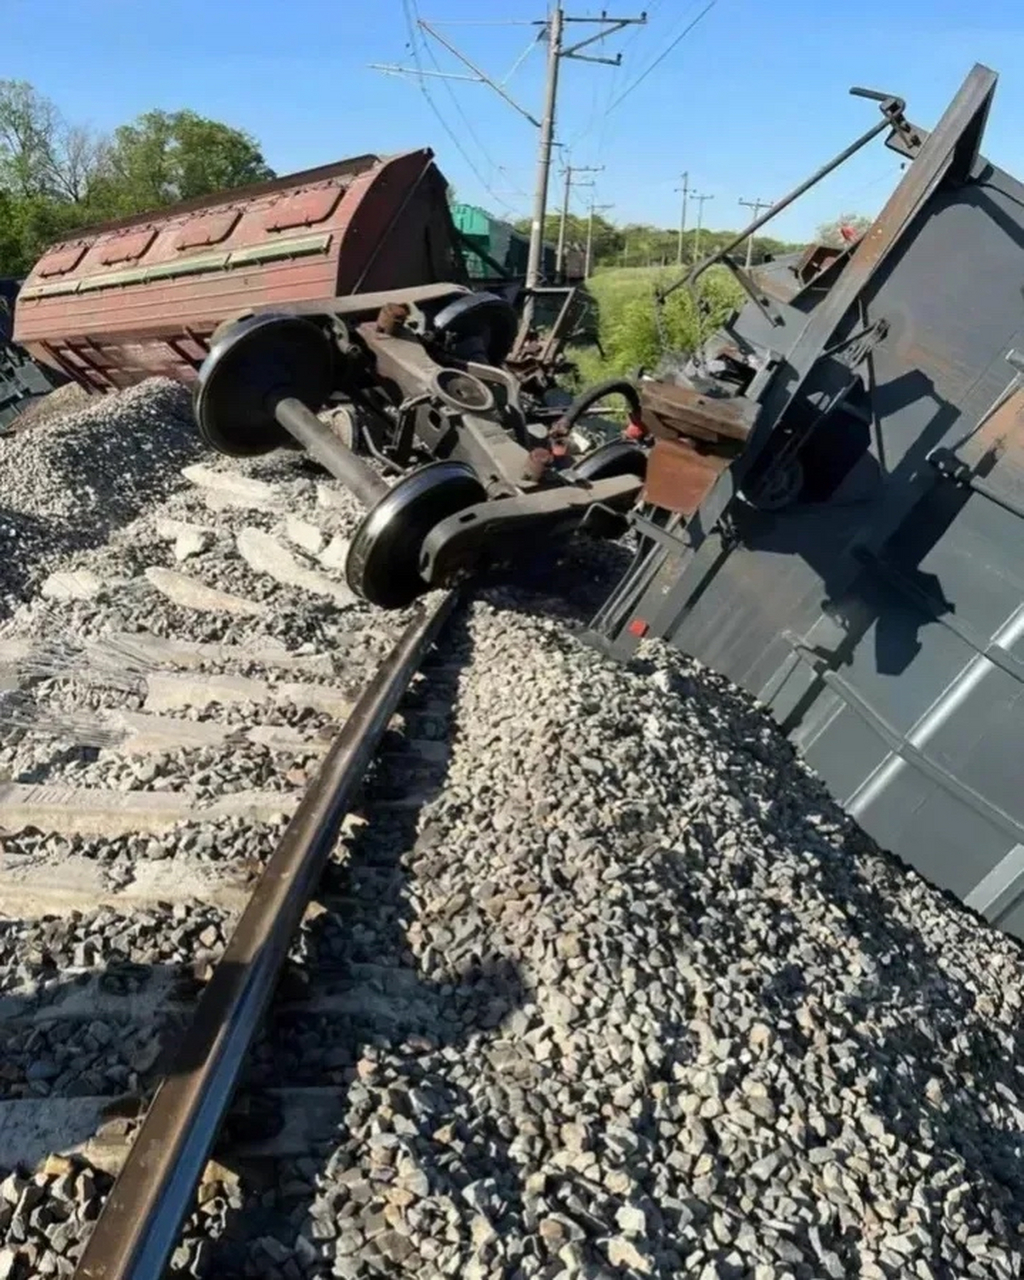 克里米亚一火车发生侧翻  根据侧翻图片来看,并没有发生爆炸,这表示